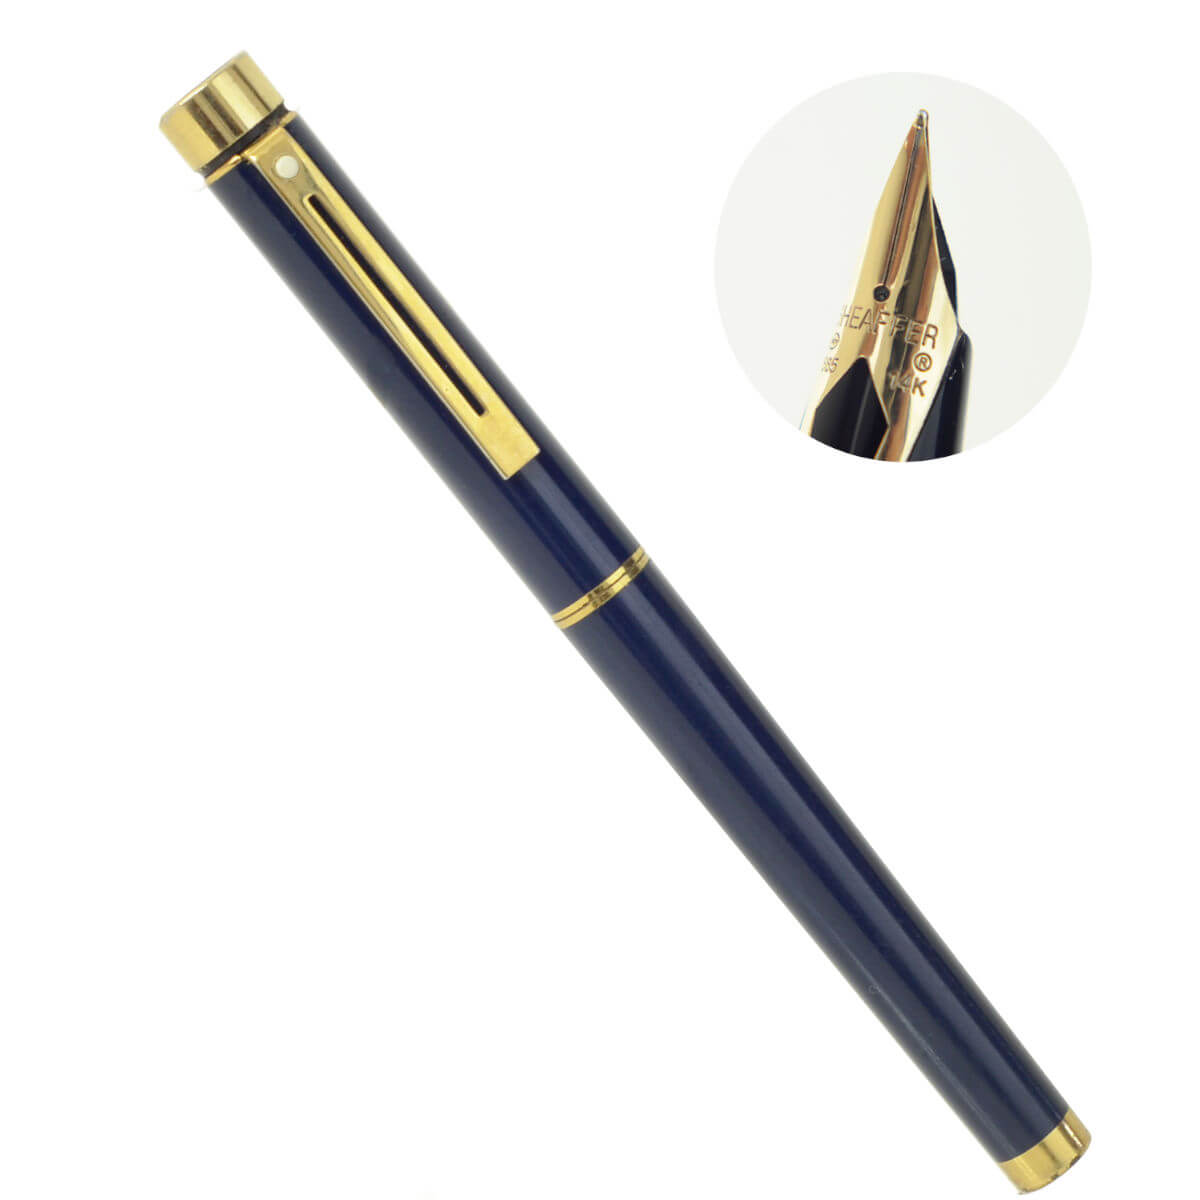 Vintage sheaffer targa 1057 blue laqcuer fountain pen with 14K gold M nib – clean